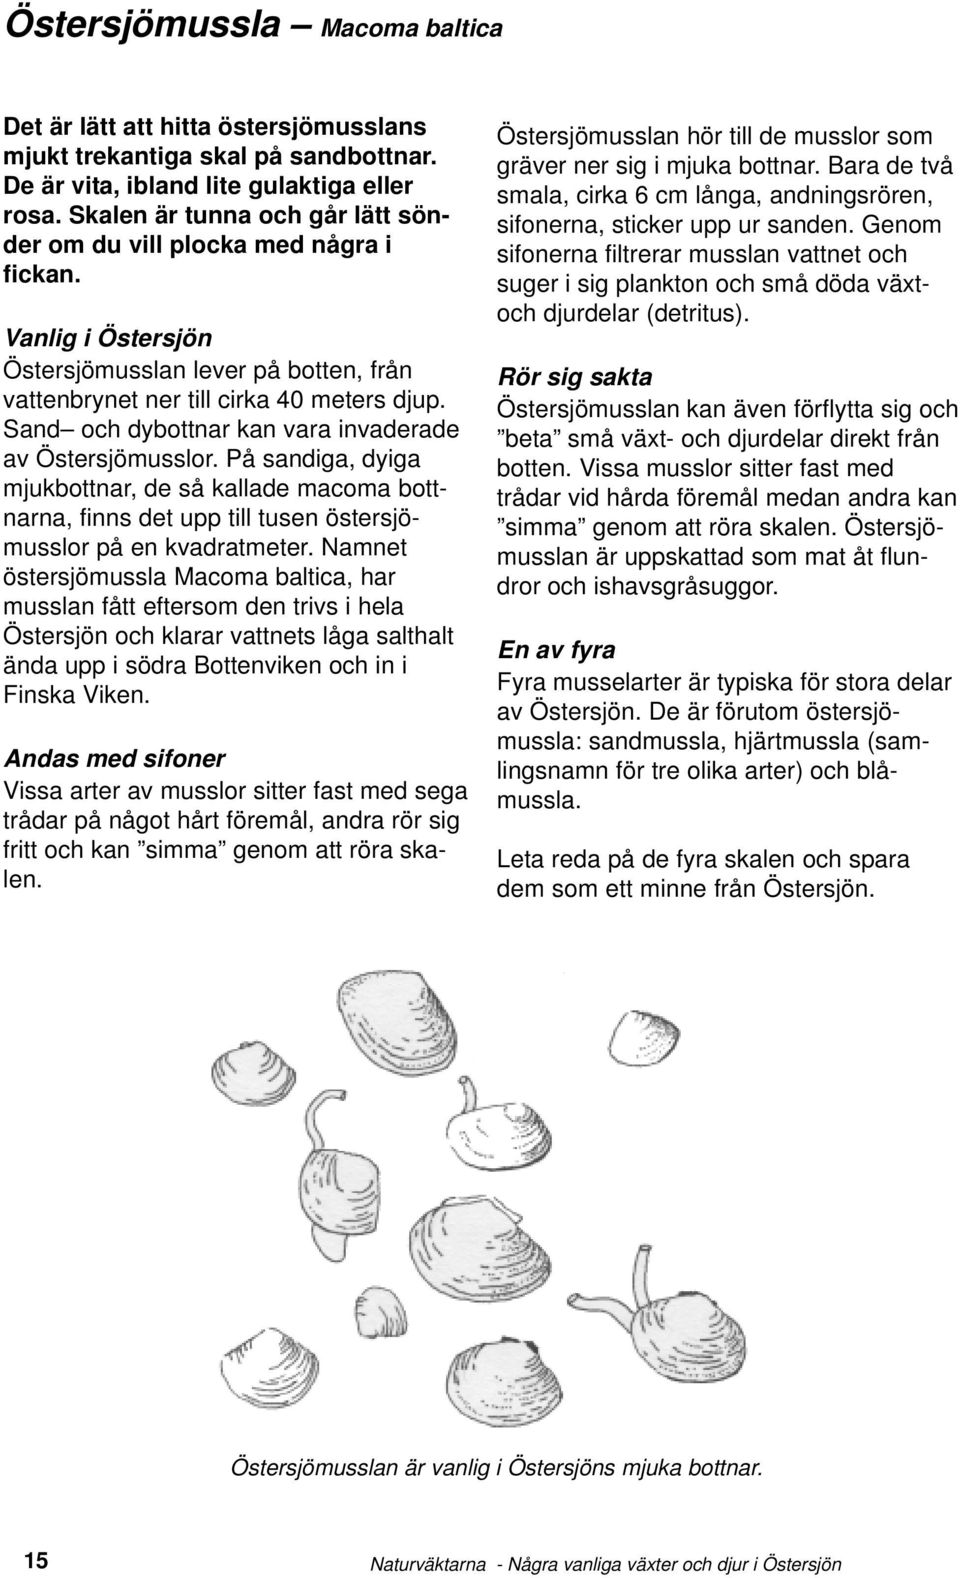 Sand och dybottnar kan vara invaderade av Östersjömusslor. På sandiga, dyiga mjukbottnar, de så kallade macoma bottnarna, finns det upp till tusen östersjömusslor på en kvadratmeter.